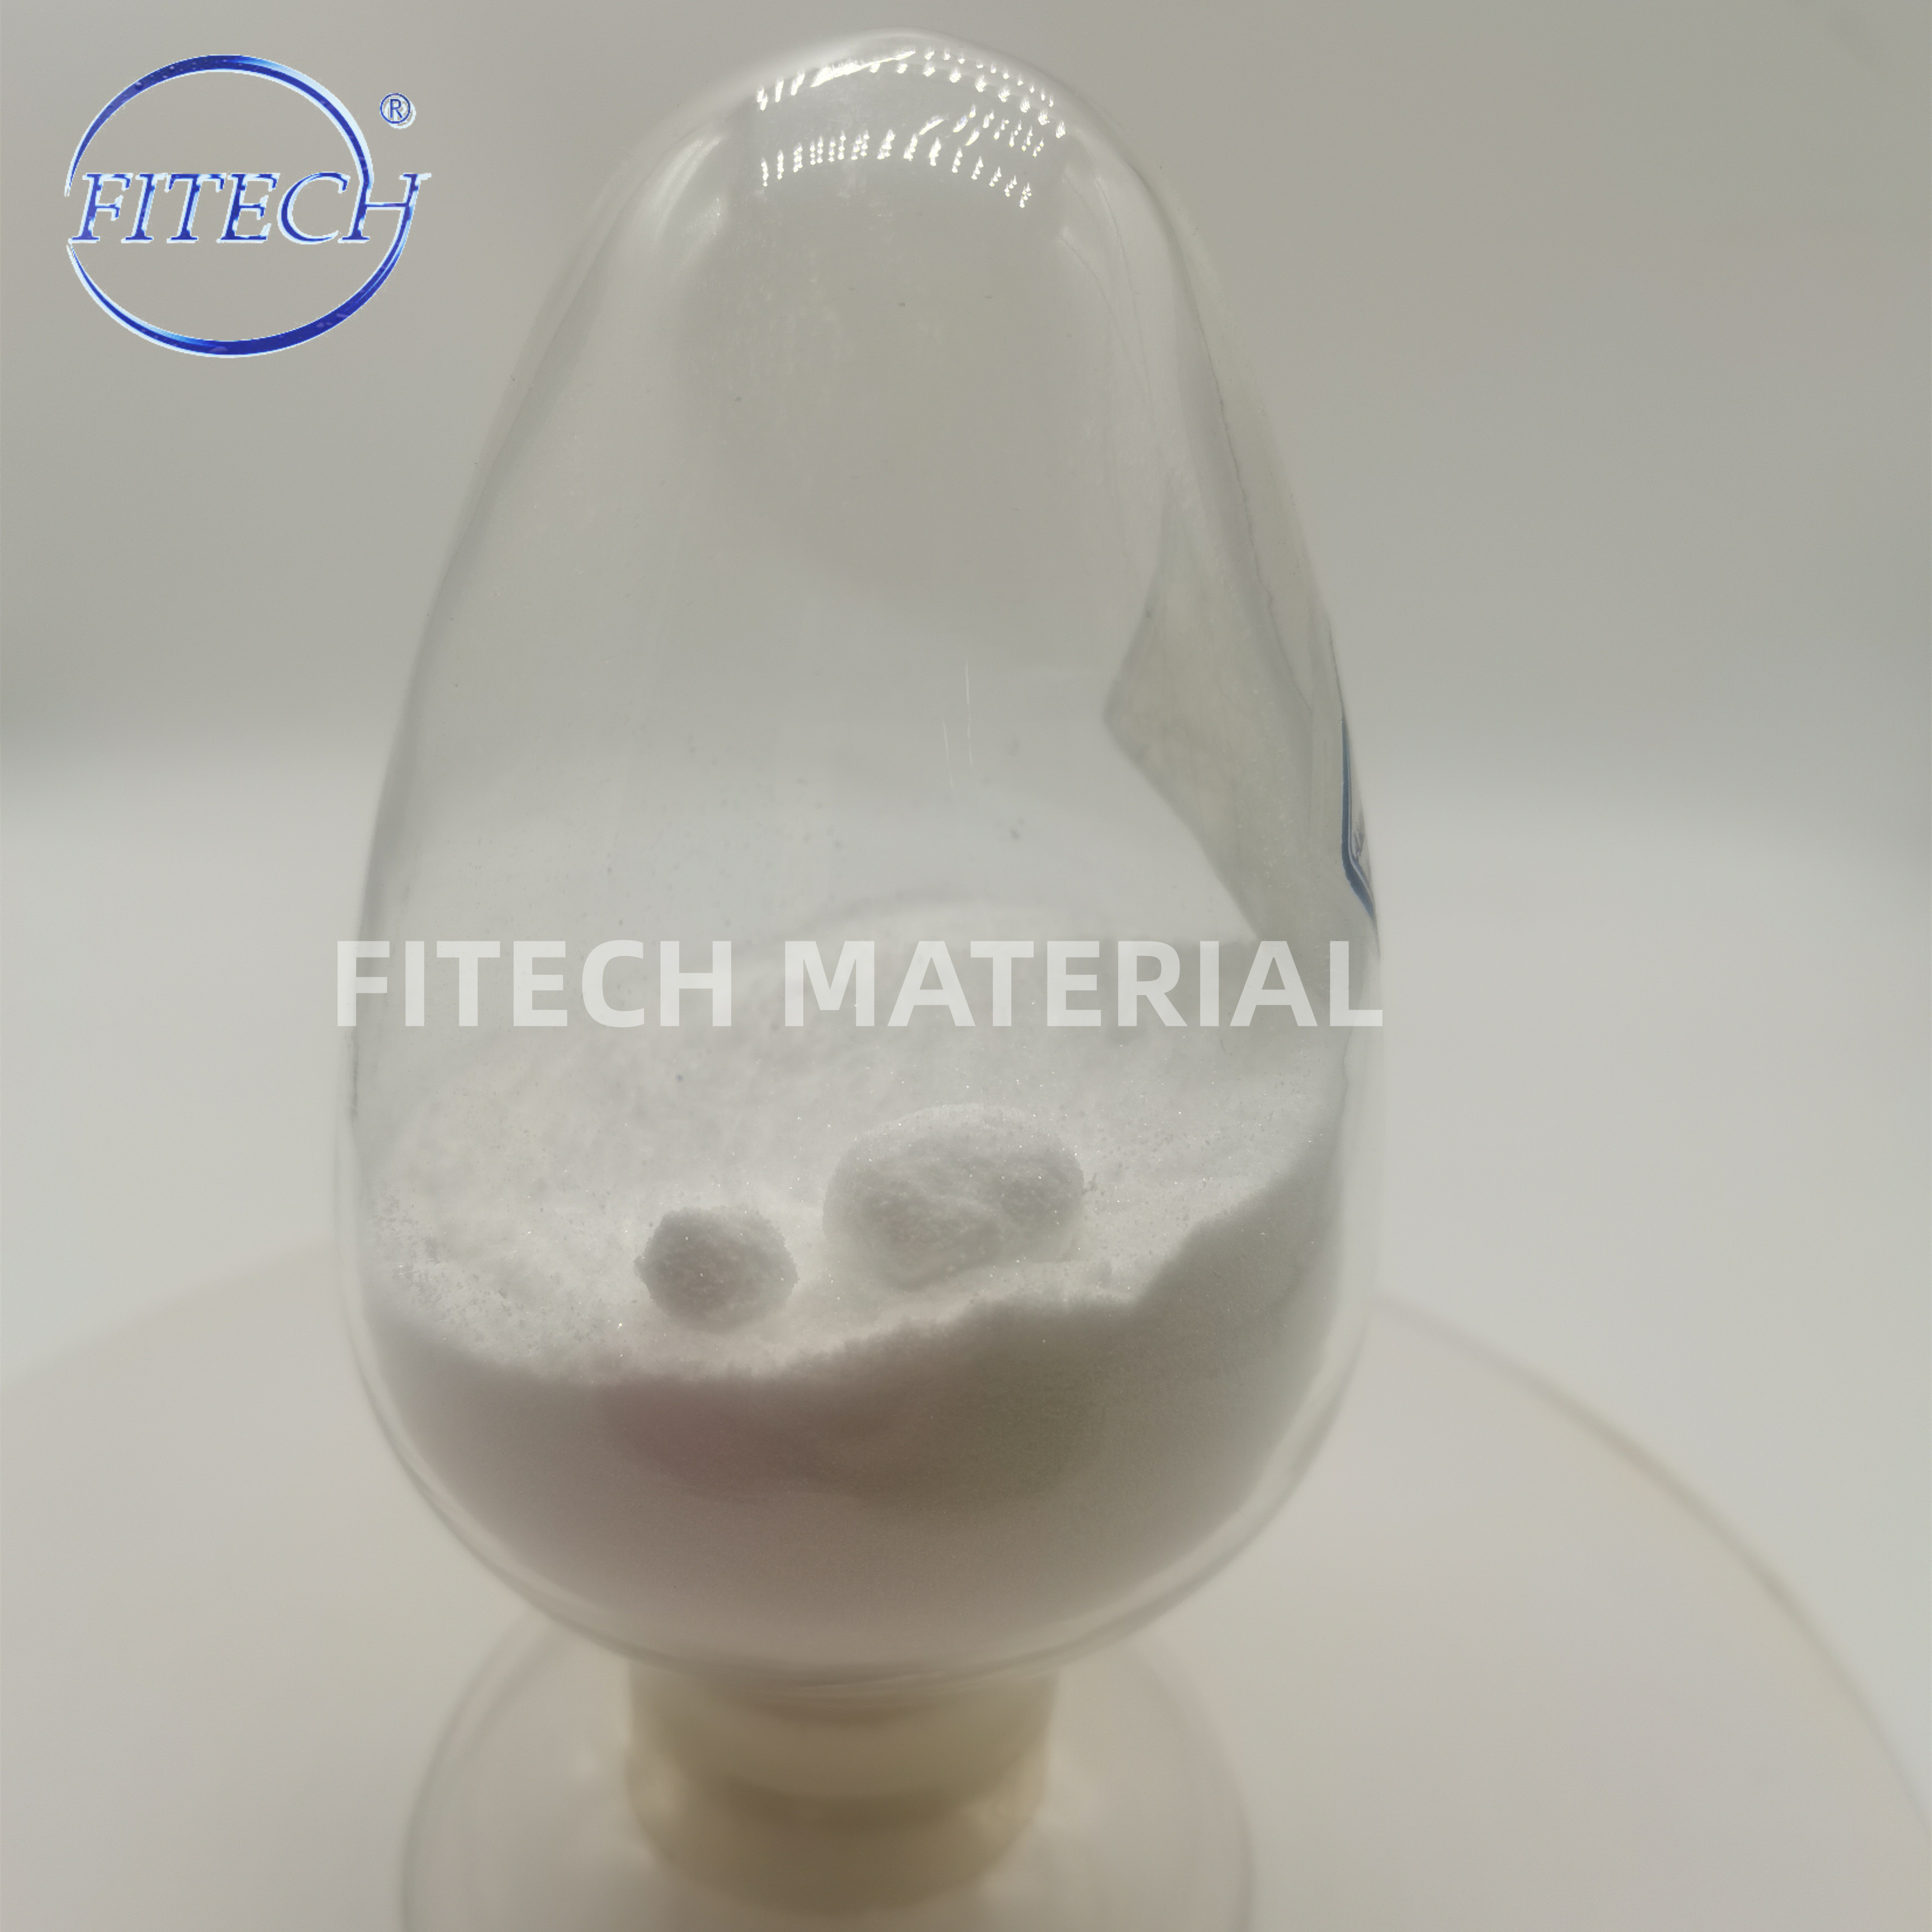 Højkvalitets lanthanchlorid krystallinsk pulver til udfældningsfosfat